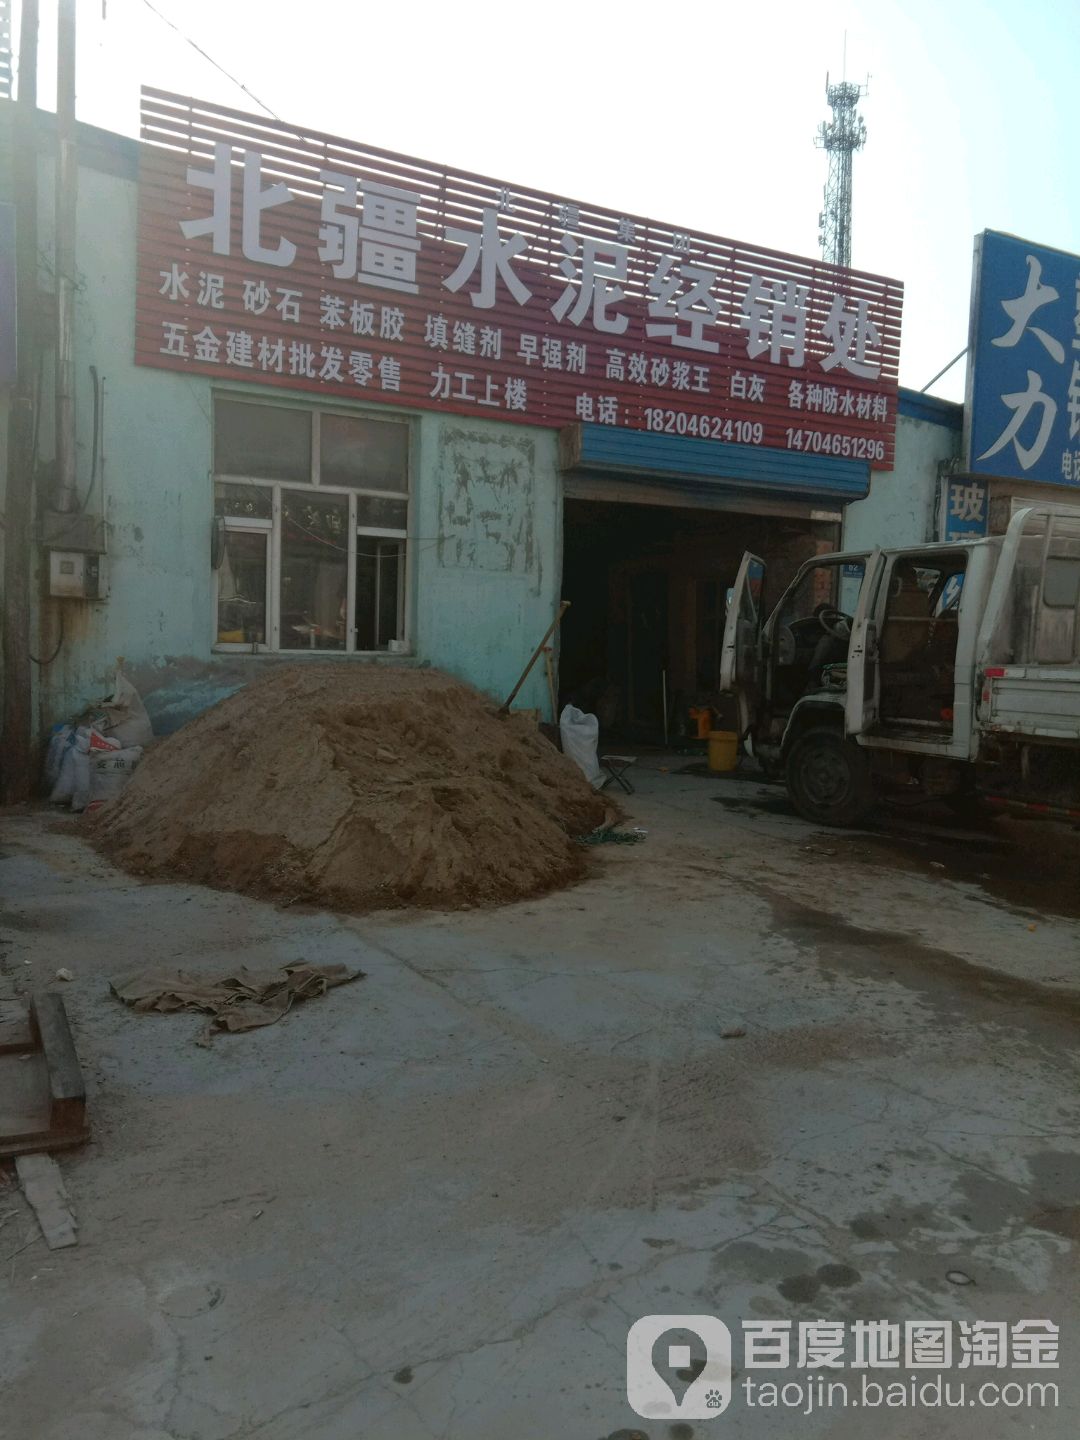 譚三北疆水泥防水建材商店